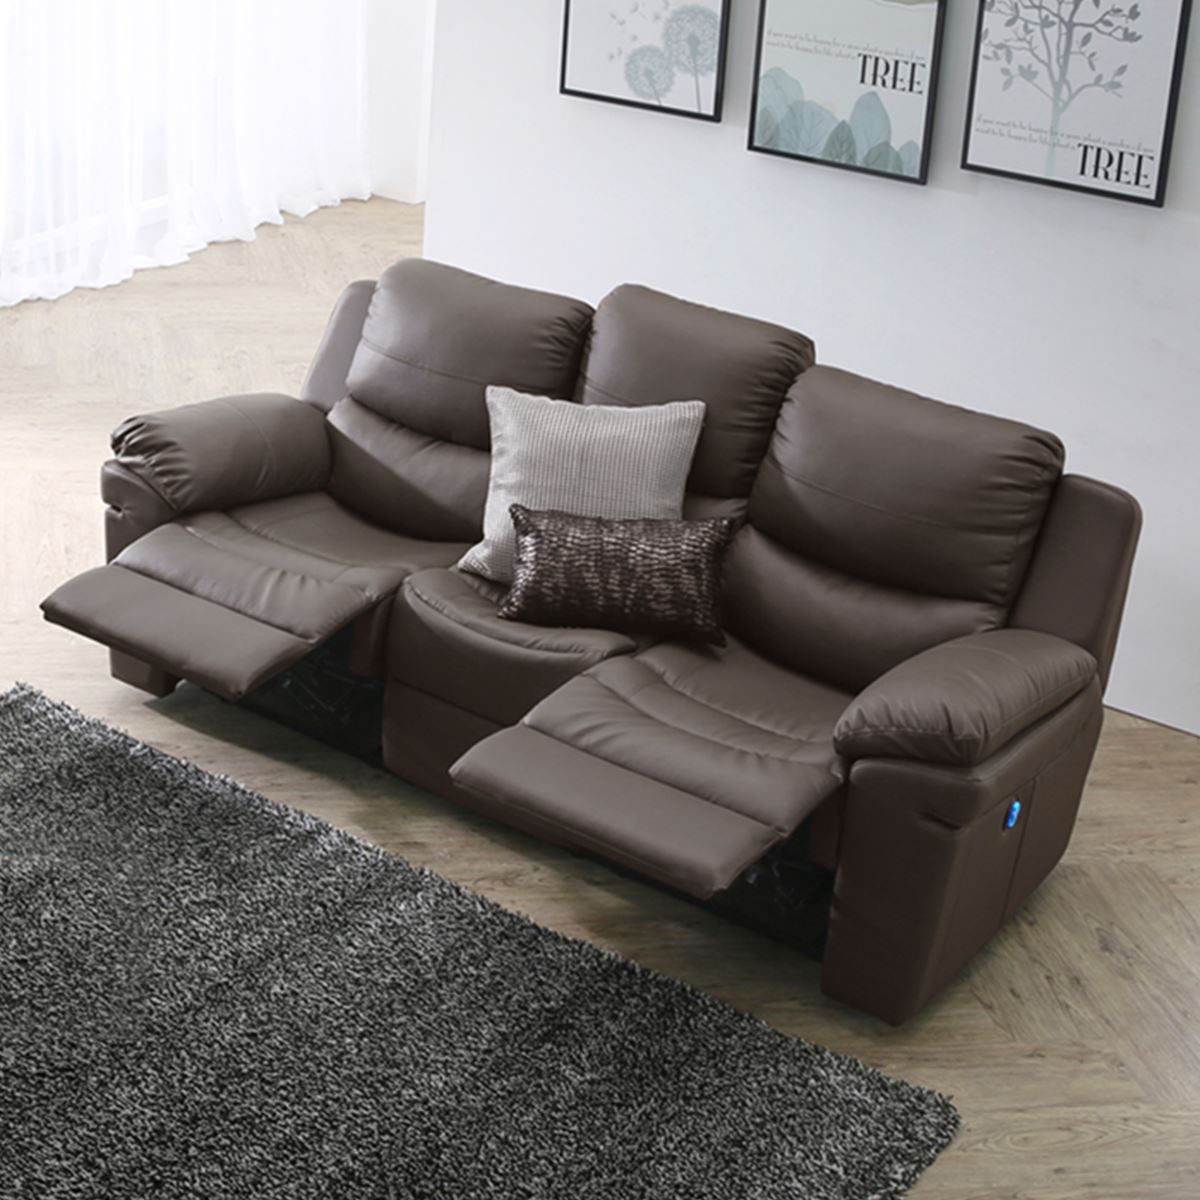 CS1603 - GHẾ SOFA DA THƯ GIÃN CHỈNH ĐIỆN – Dongsuh Furniture